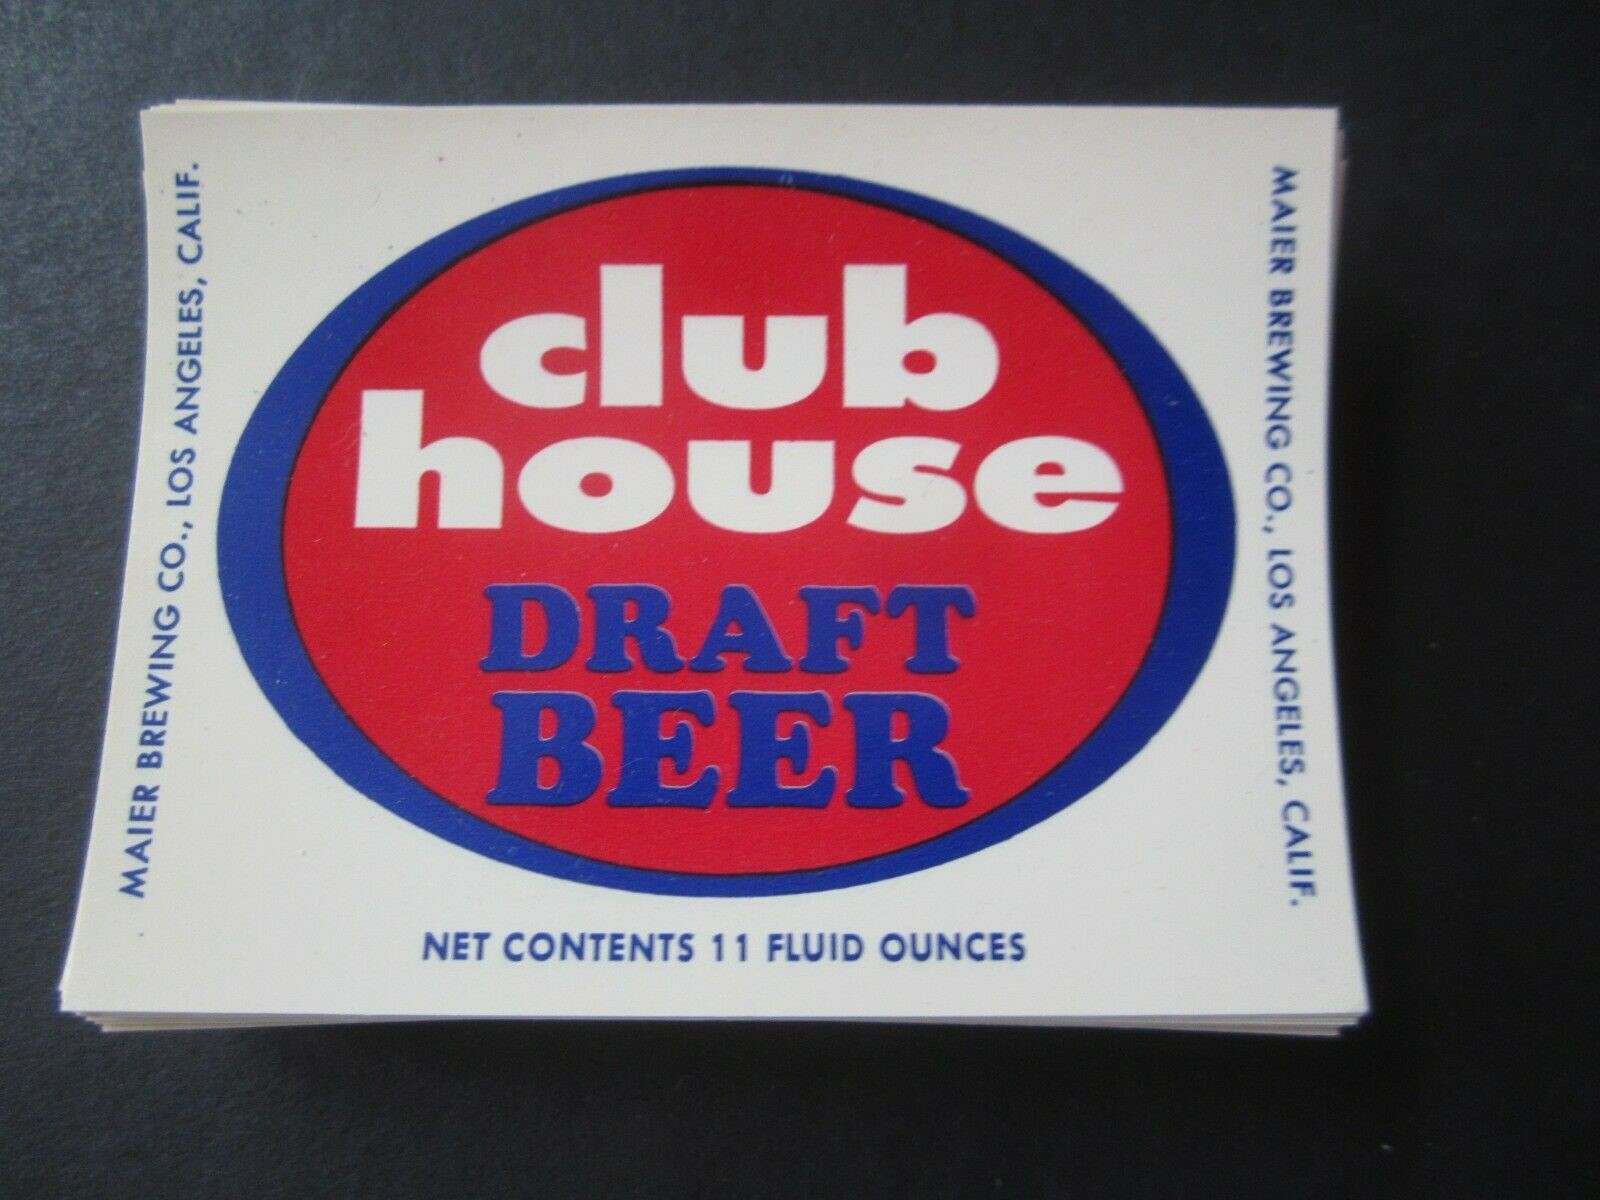  Lot of 100 Old Vintage - CLUB HOUSE - BEER LAB...